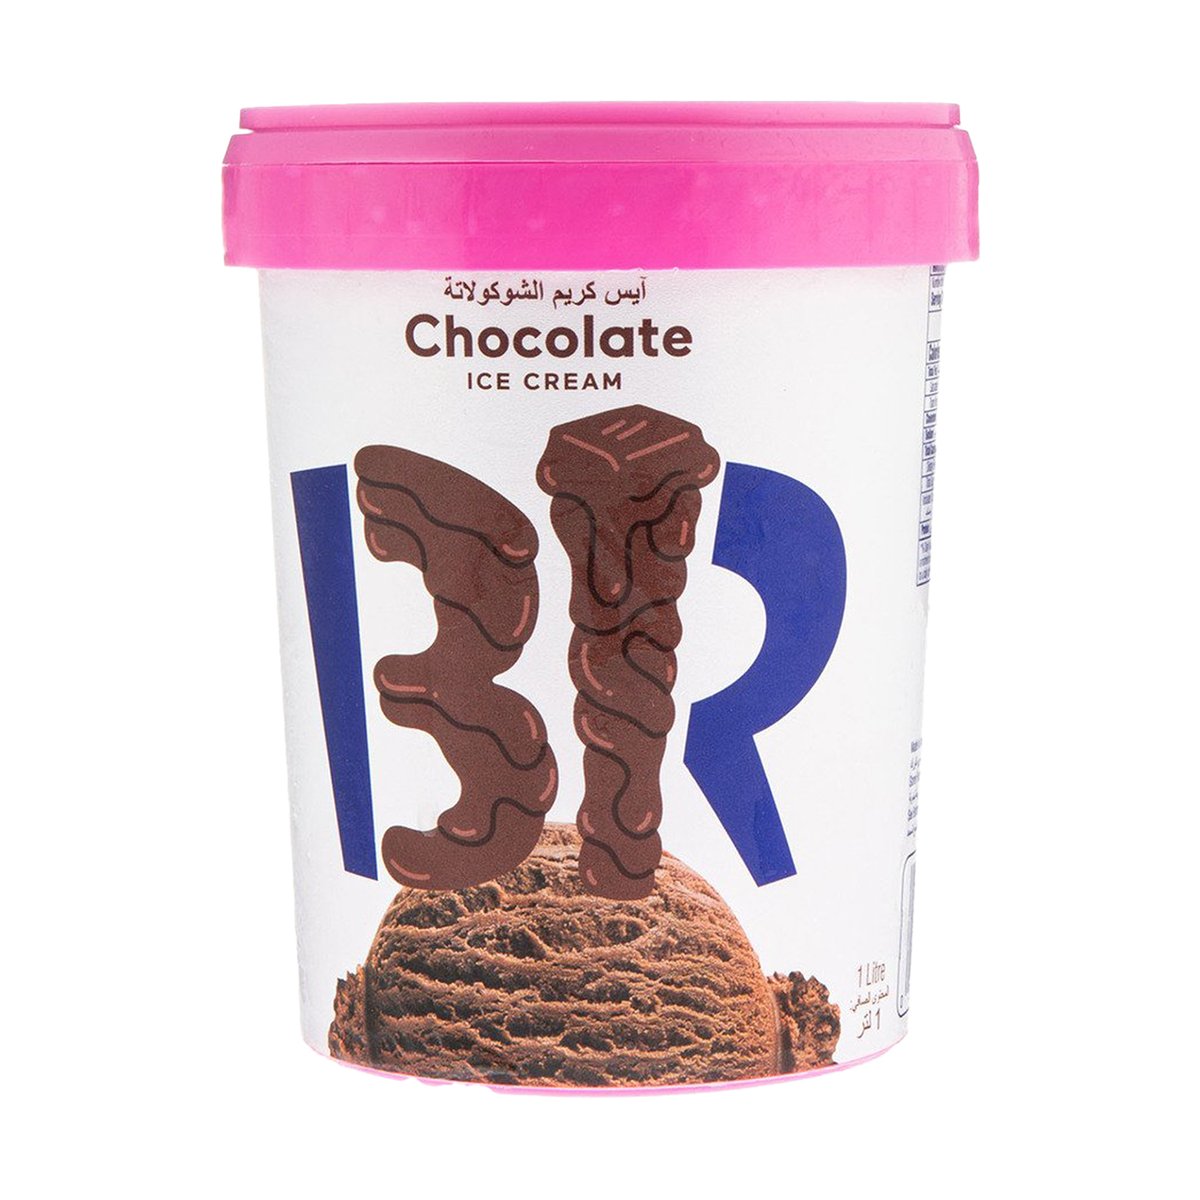 اشتري قم بشراء باسكن روبنز آيس كريم شوكولاتة 1 لتر Online at Best Price من الموقع - من لولو هايبر ماركت Ice Cream Take Home في الامارات